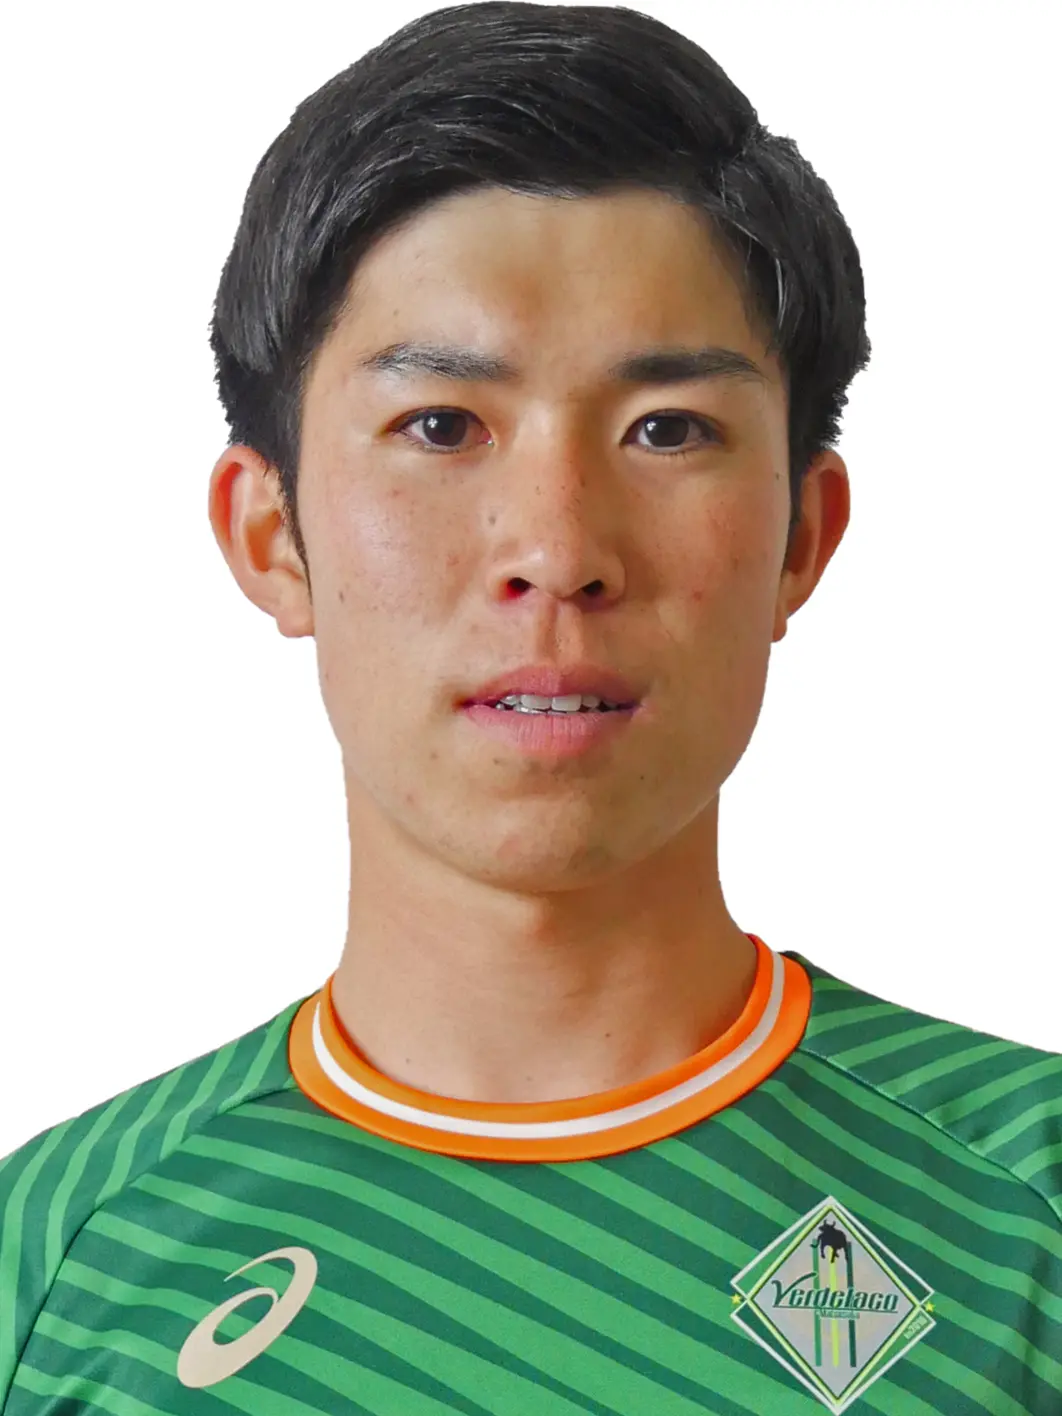 濱口雄伎選手の顔写真